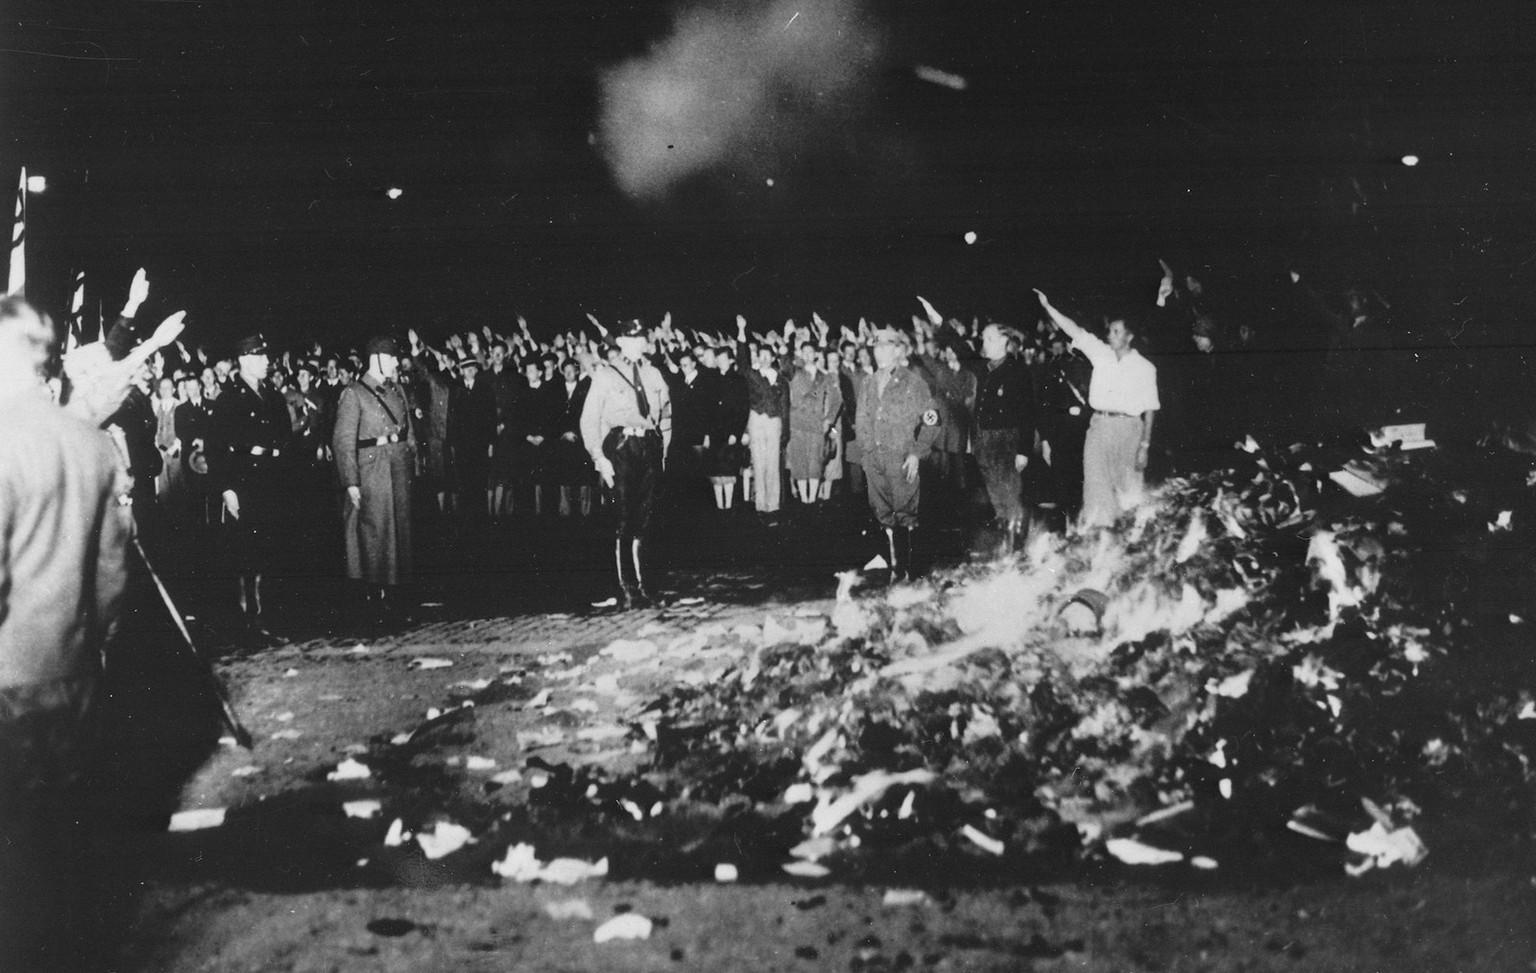 Die Verbrennung von Literatur weckte ungute Erinnerungen an Ereignisse während dem Nationalsozialismus rund 30 Jahre zuvor. Bücherverbrennung auf dem Opernplatz in Berlin am 10. Mai 1933.
https://uplo ...